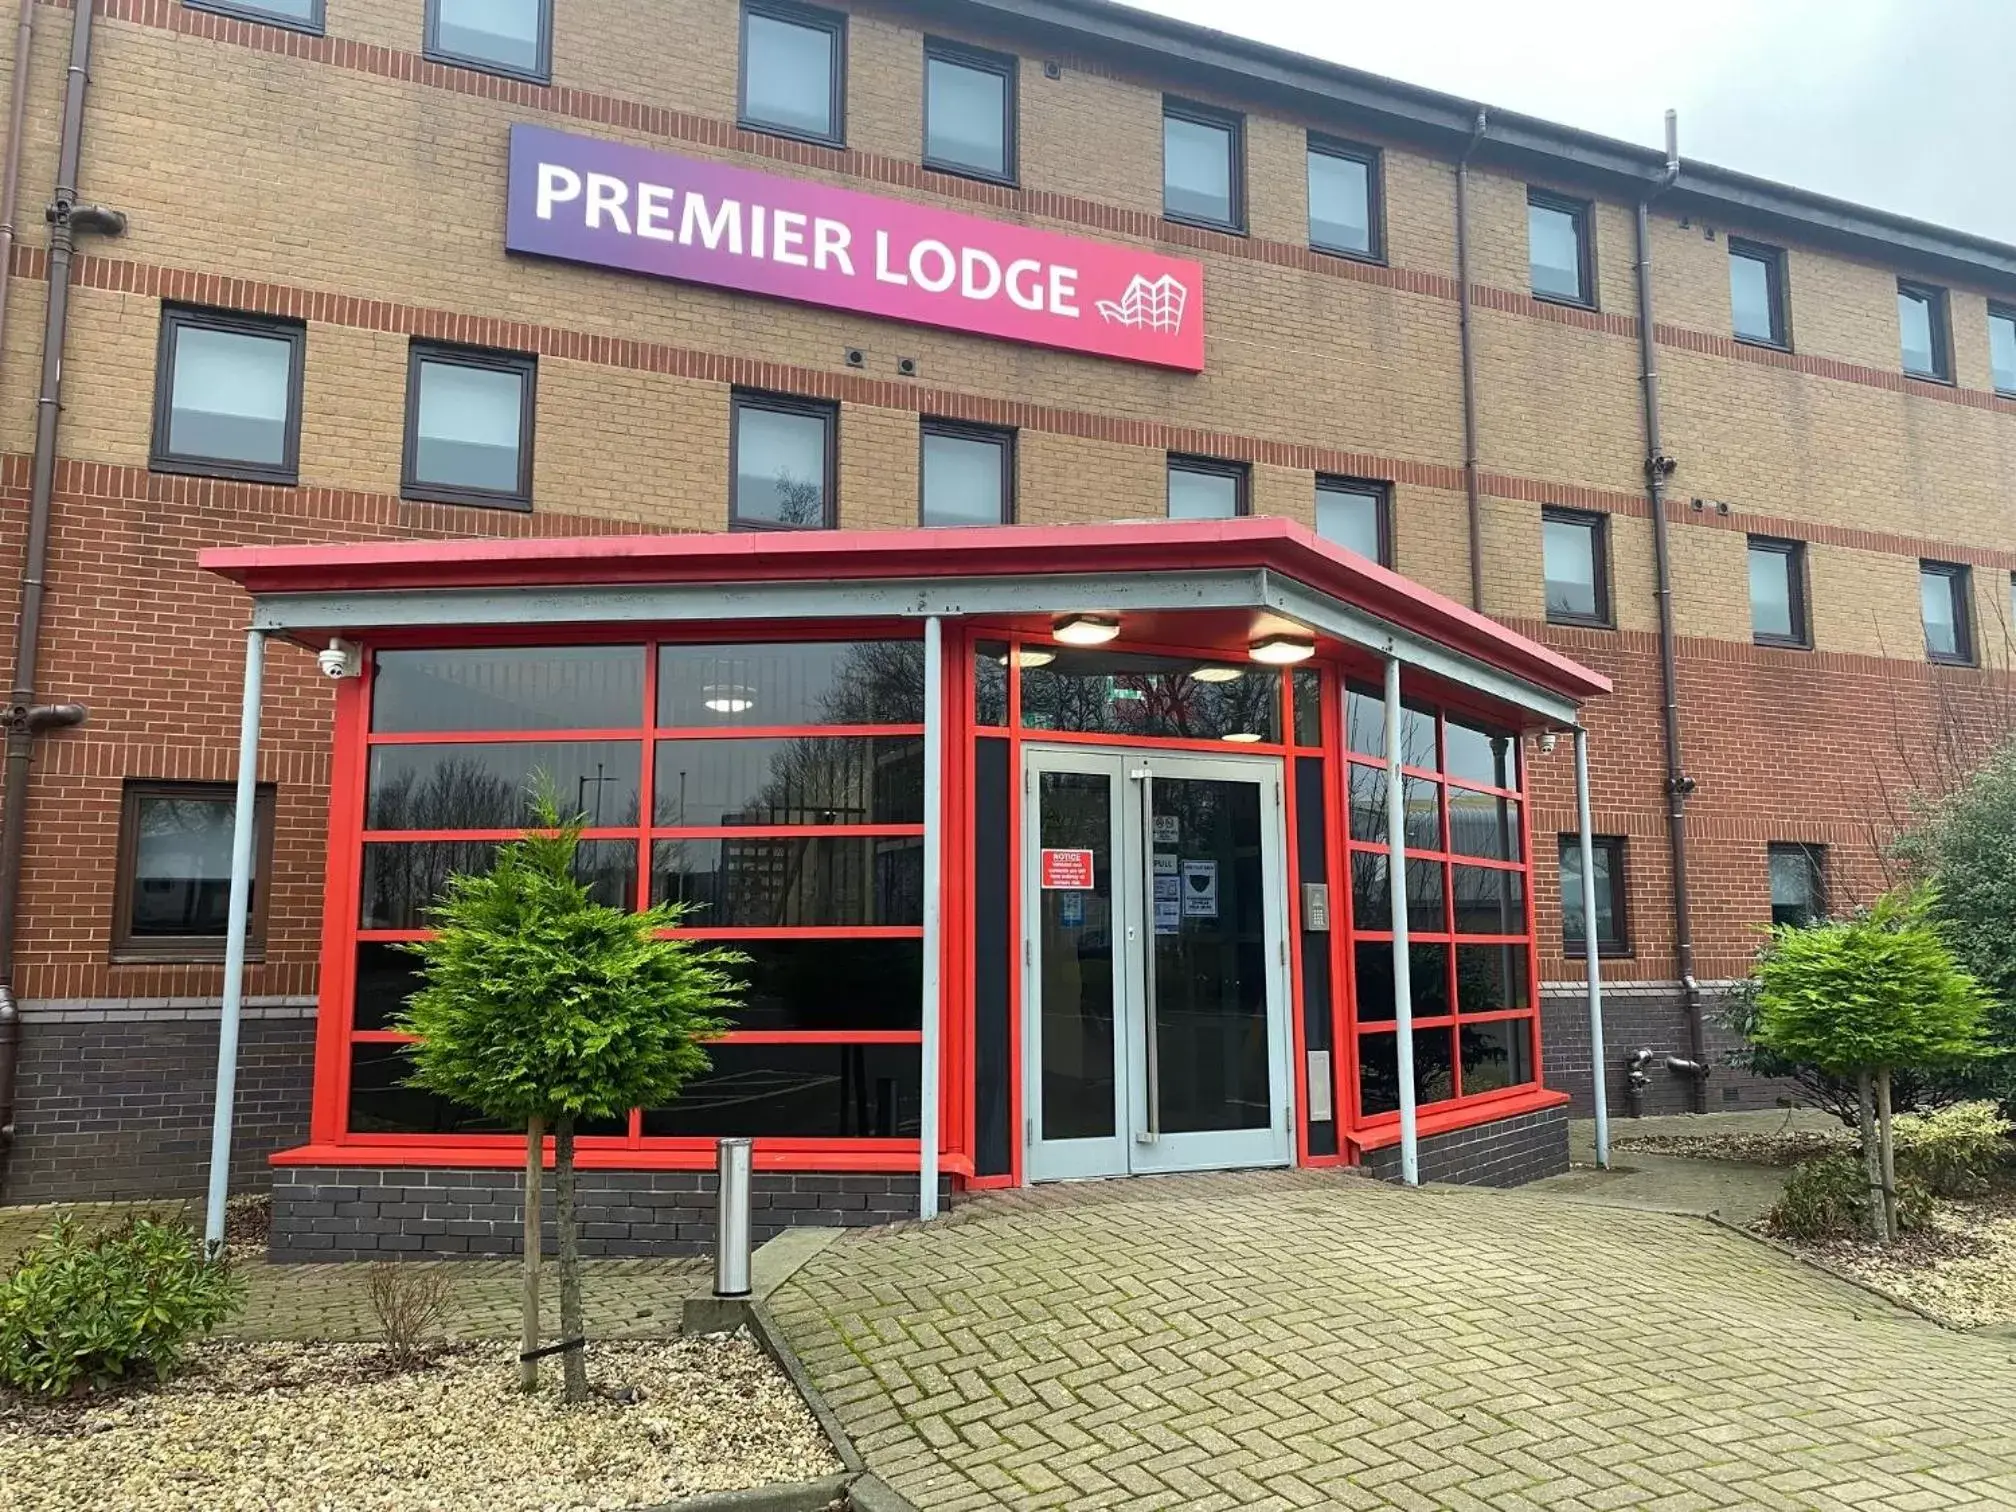 Facade/entrance in Premier Lodge